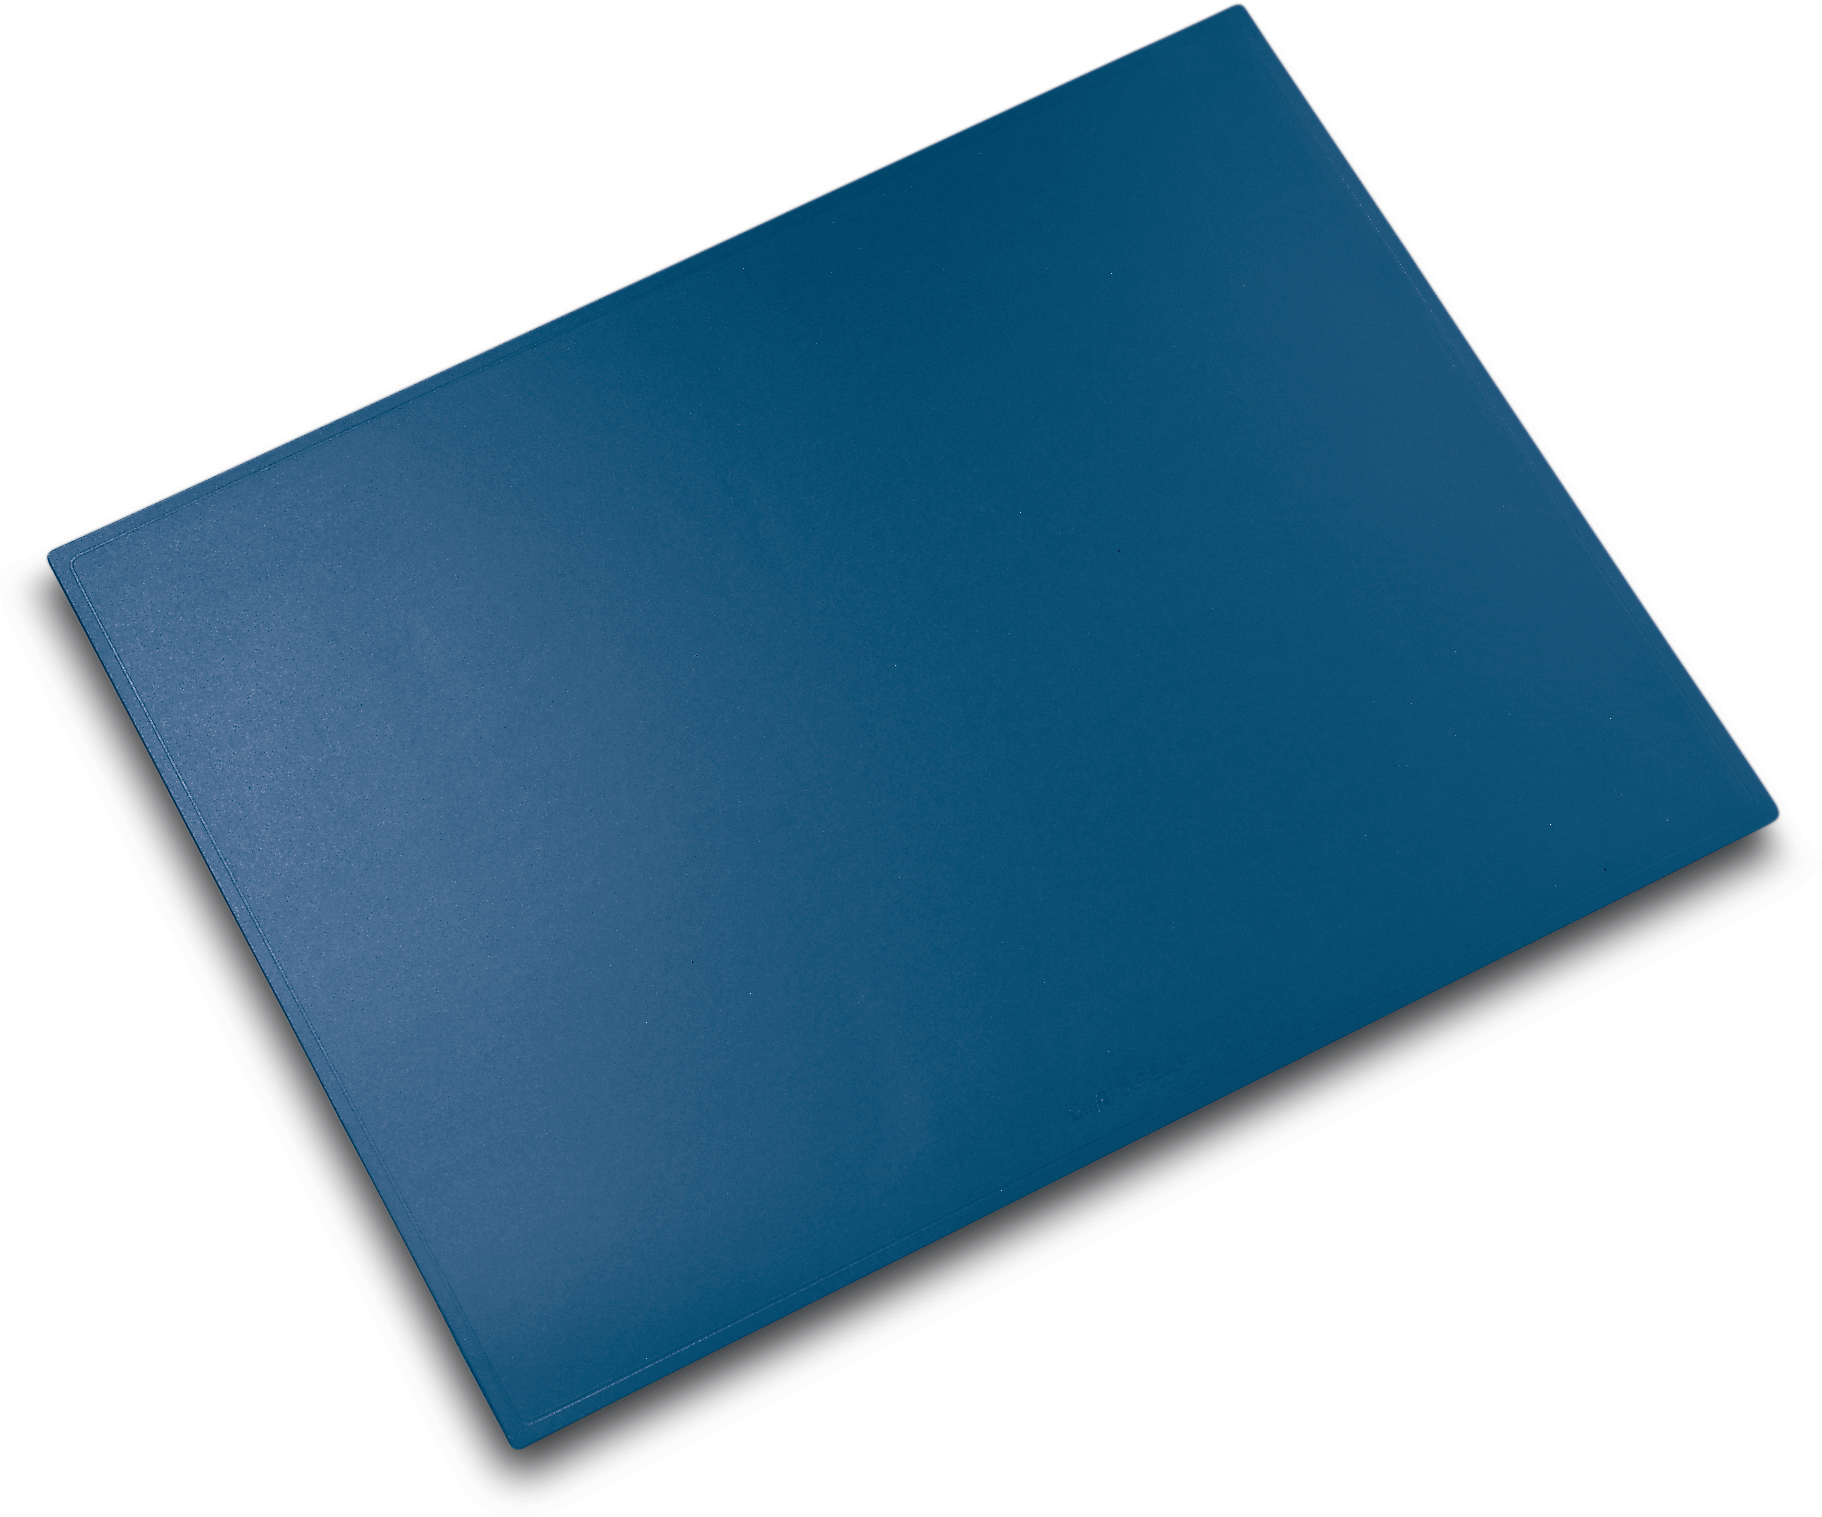 LÄUFER Schreibunterl. Durella 40x53cm 40535 blau